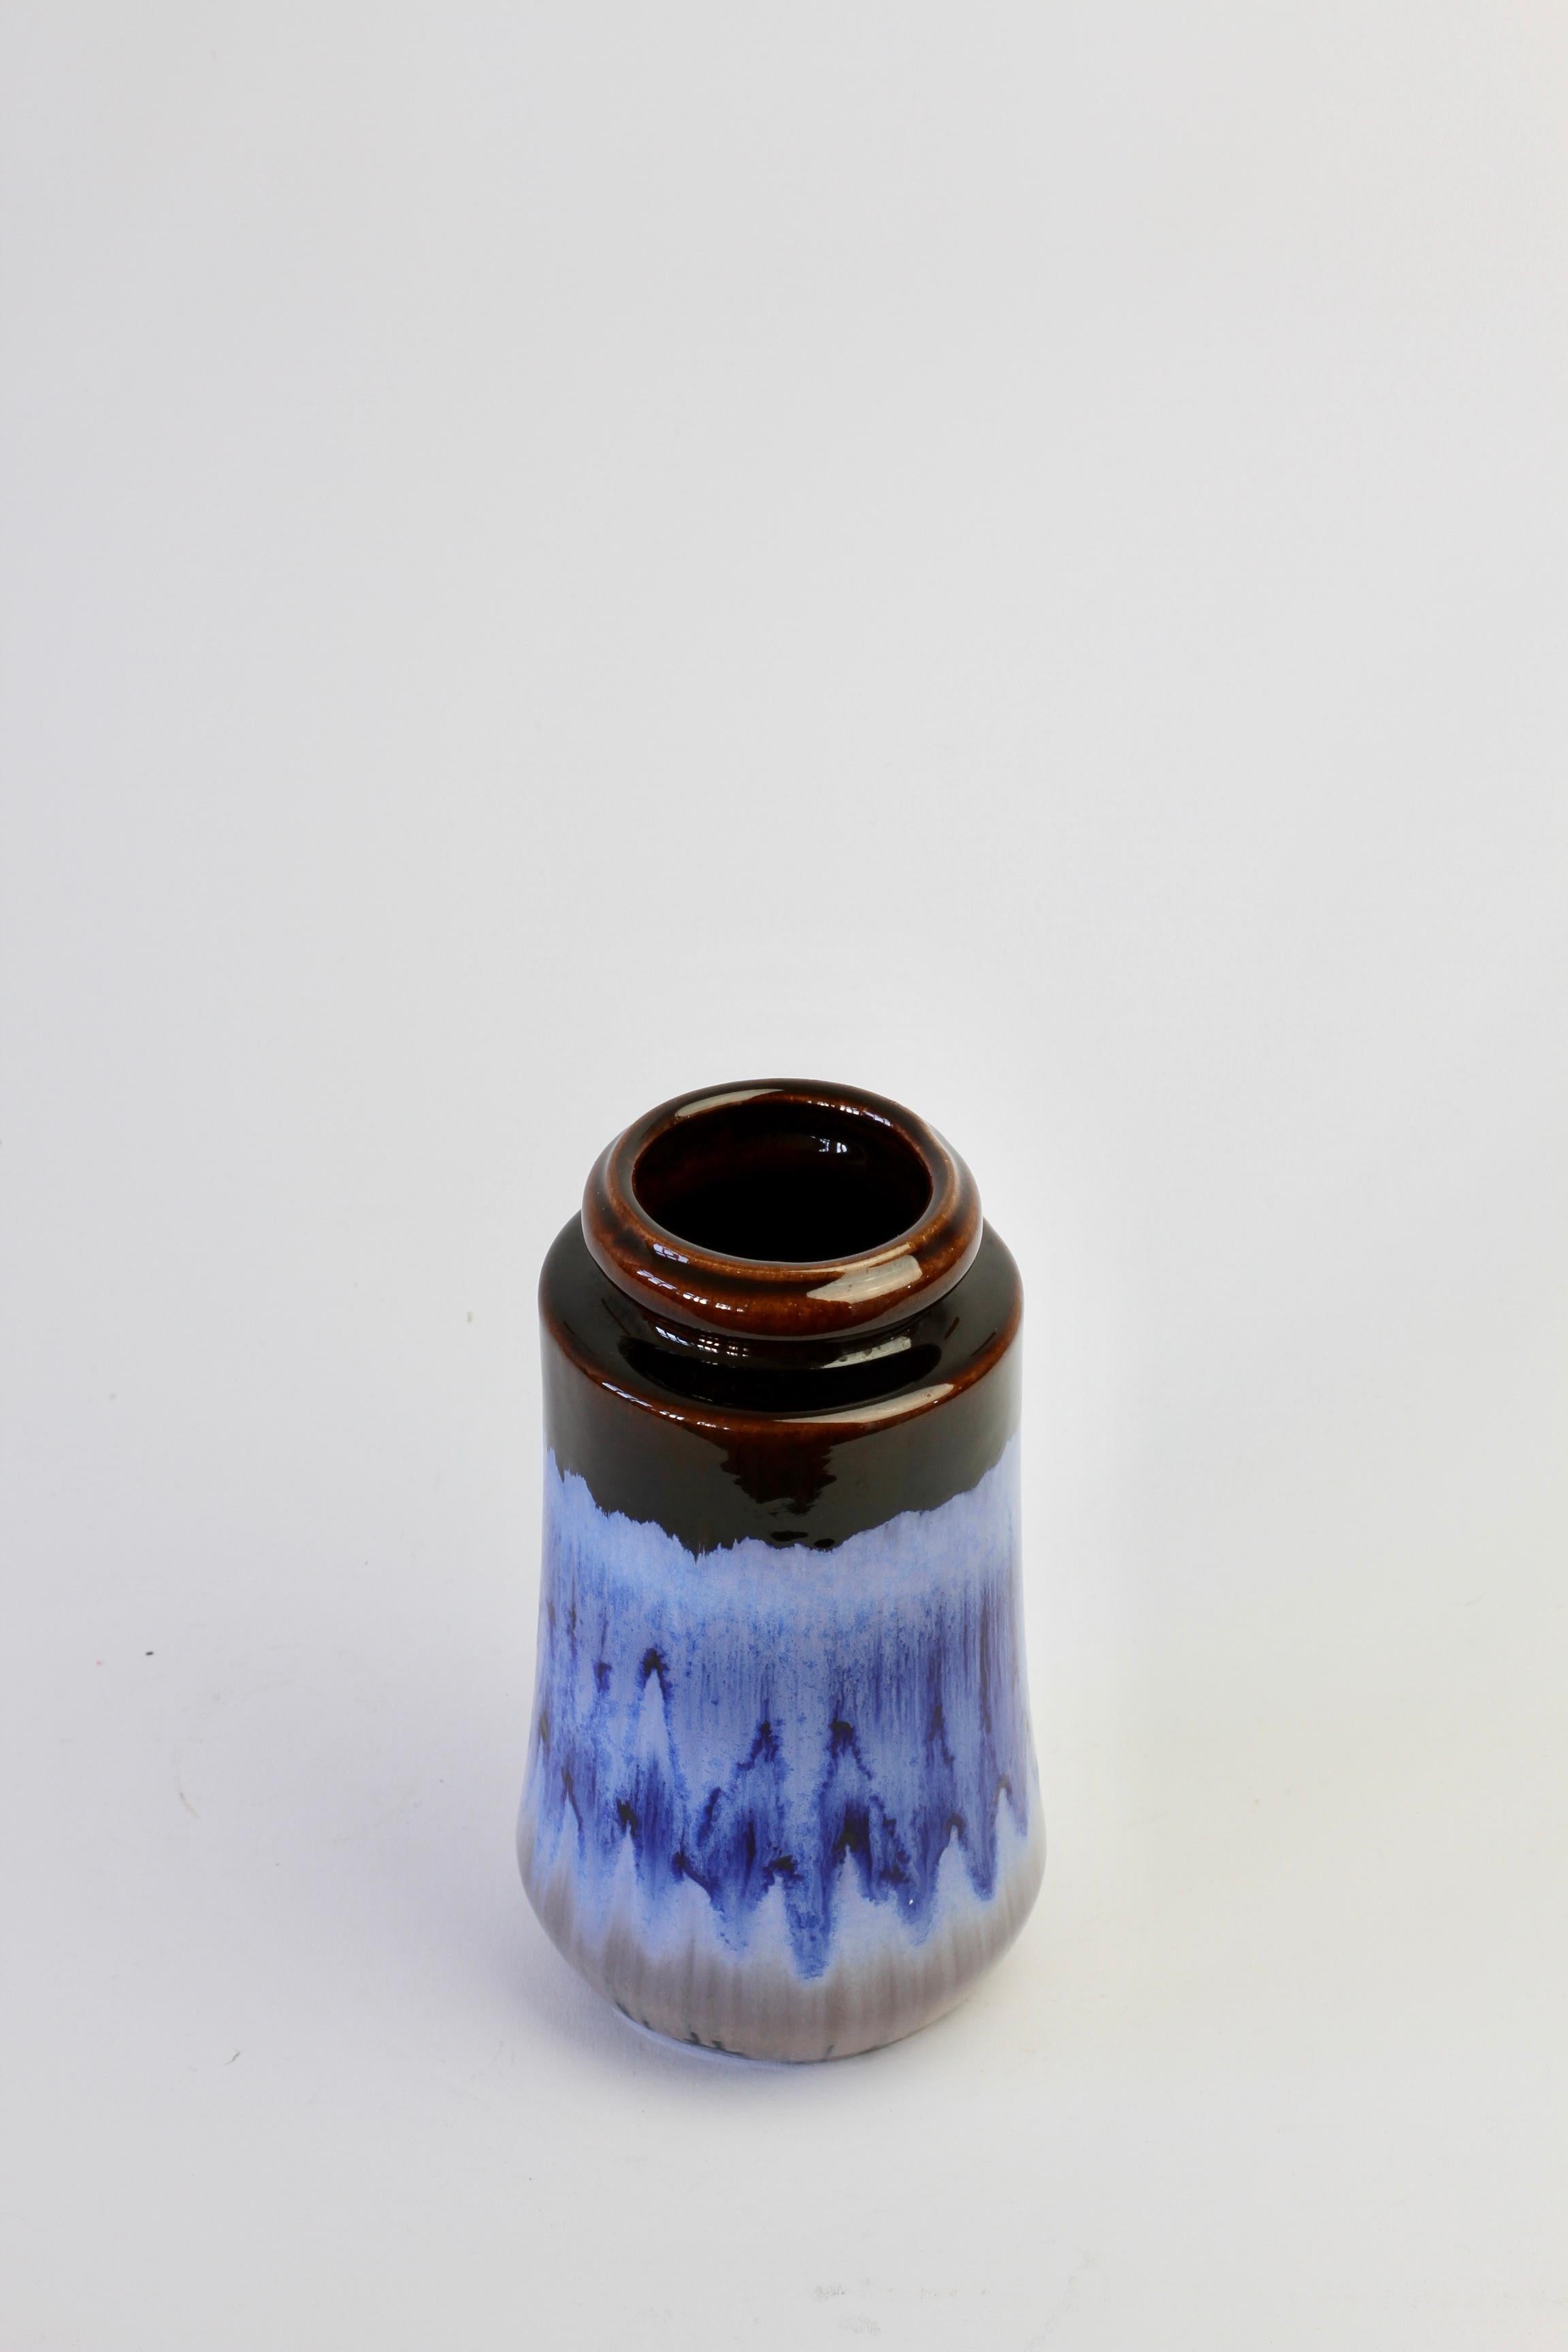 Wunderschöne Vase des westdeutschen Keramikherstellers Scheurich Keramik aus der Jahrhundertmitte, um 1965. Setzen Sie mit dieser schönen blauen Tropfglasur einen Farbakzent in Ihrem Zuhause.

Formnummer 549 - 21.